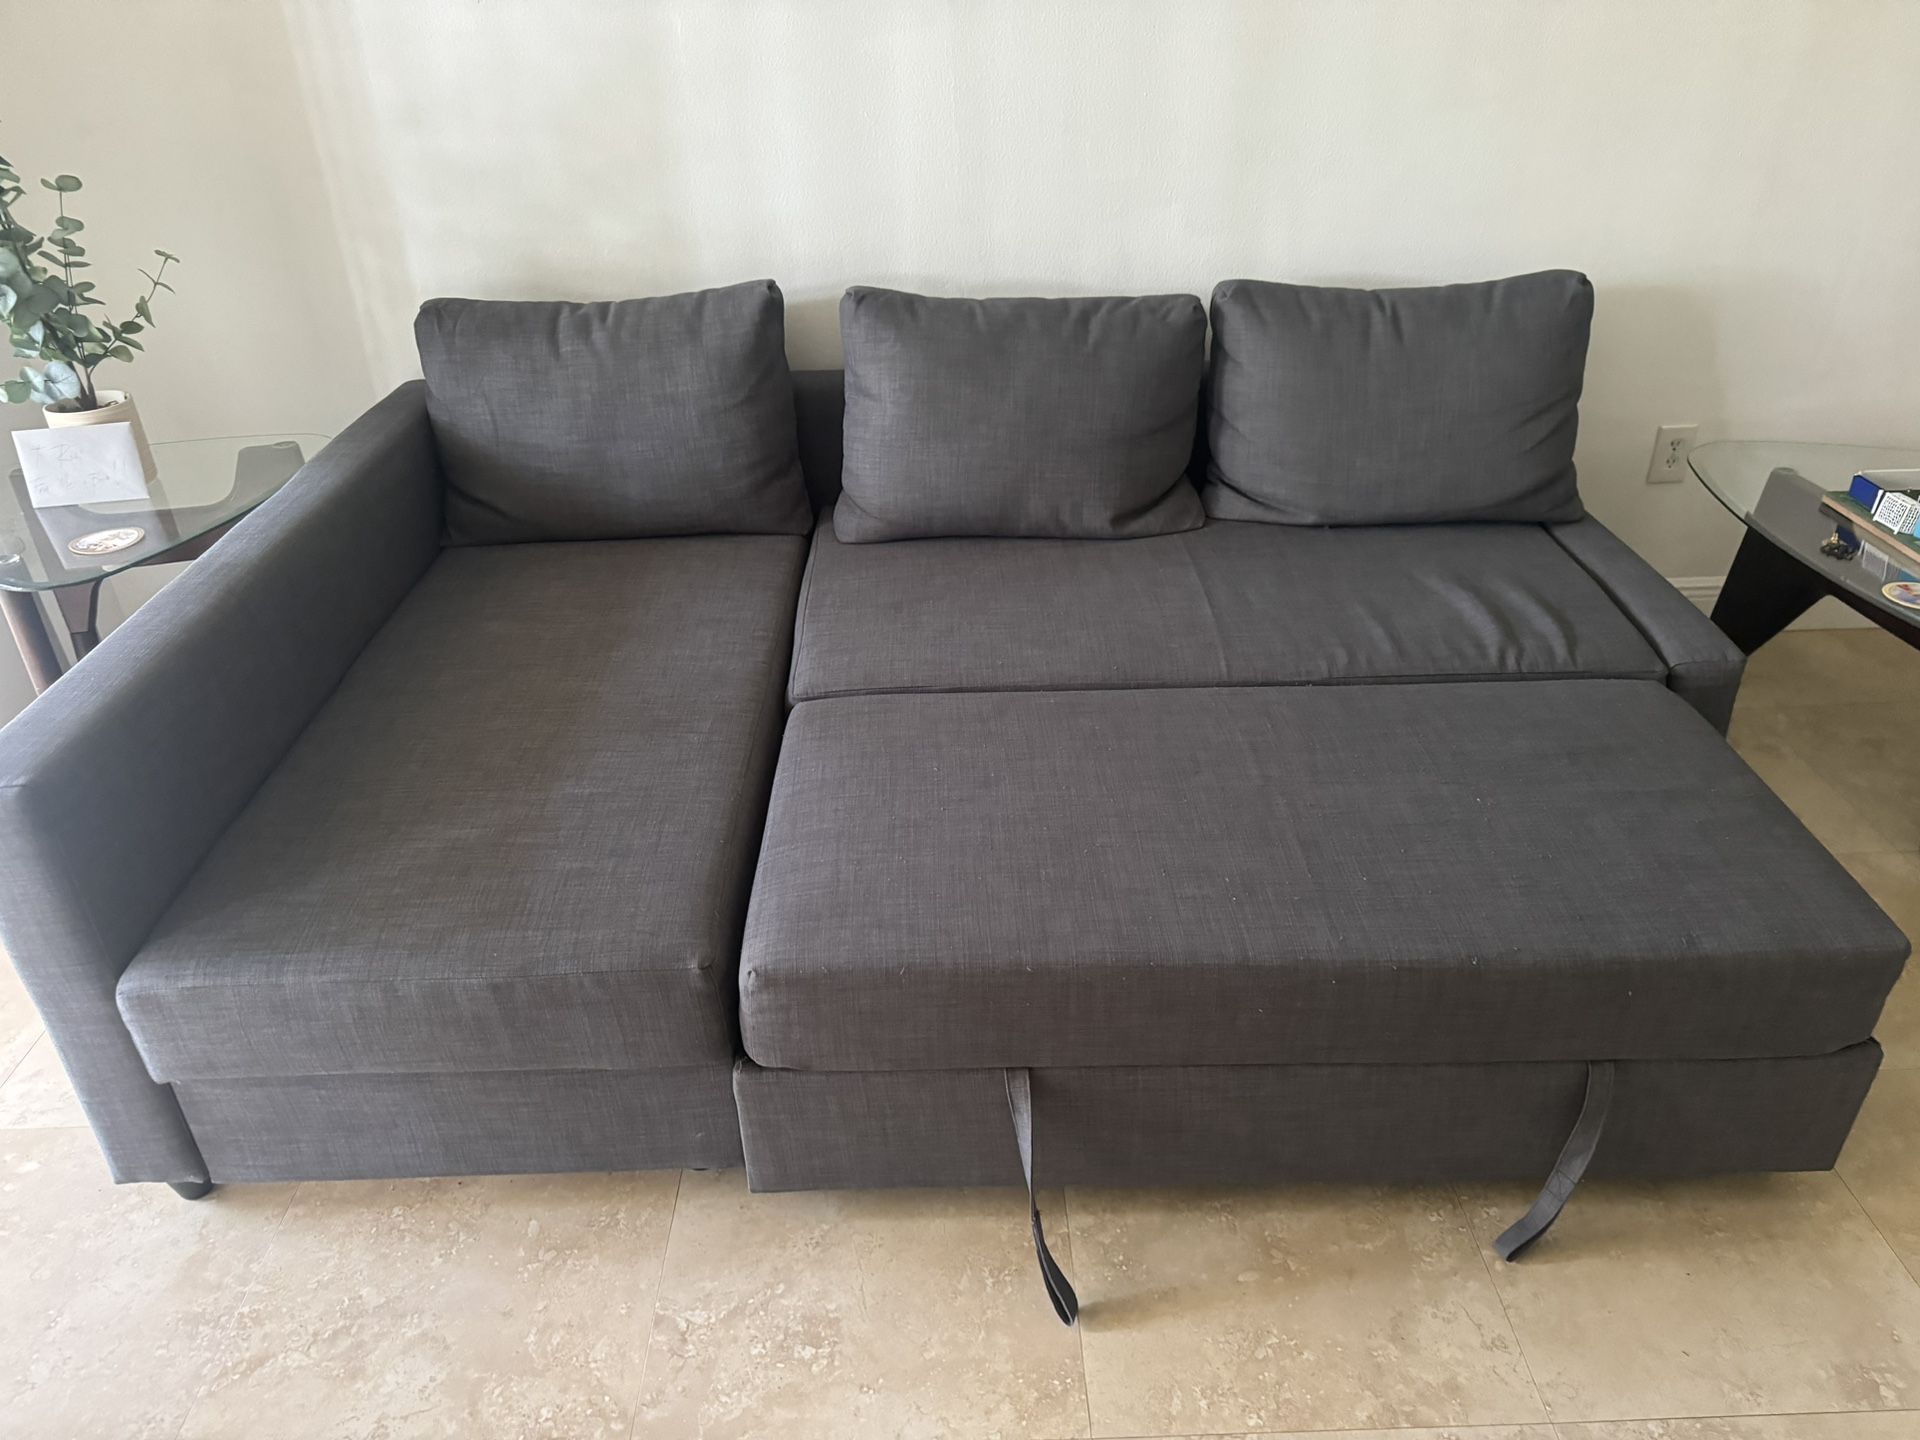 IKEA Friheten Sofa Bed 